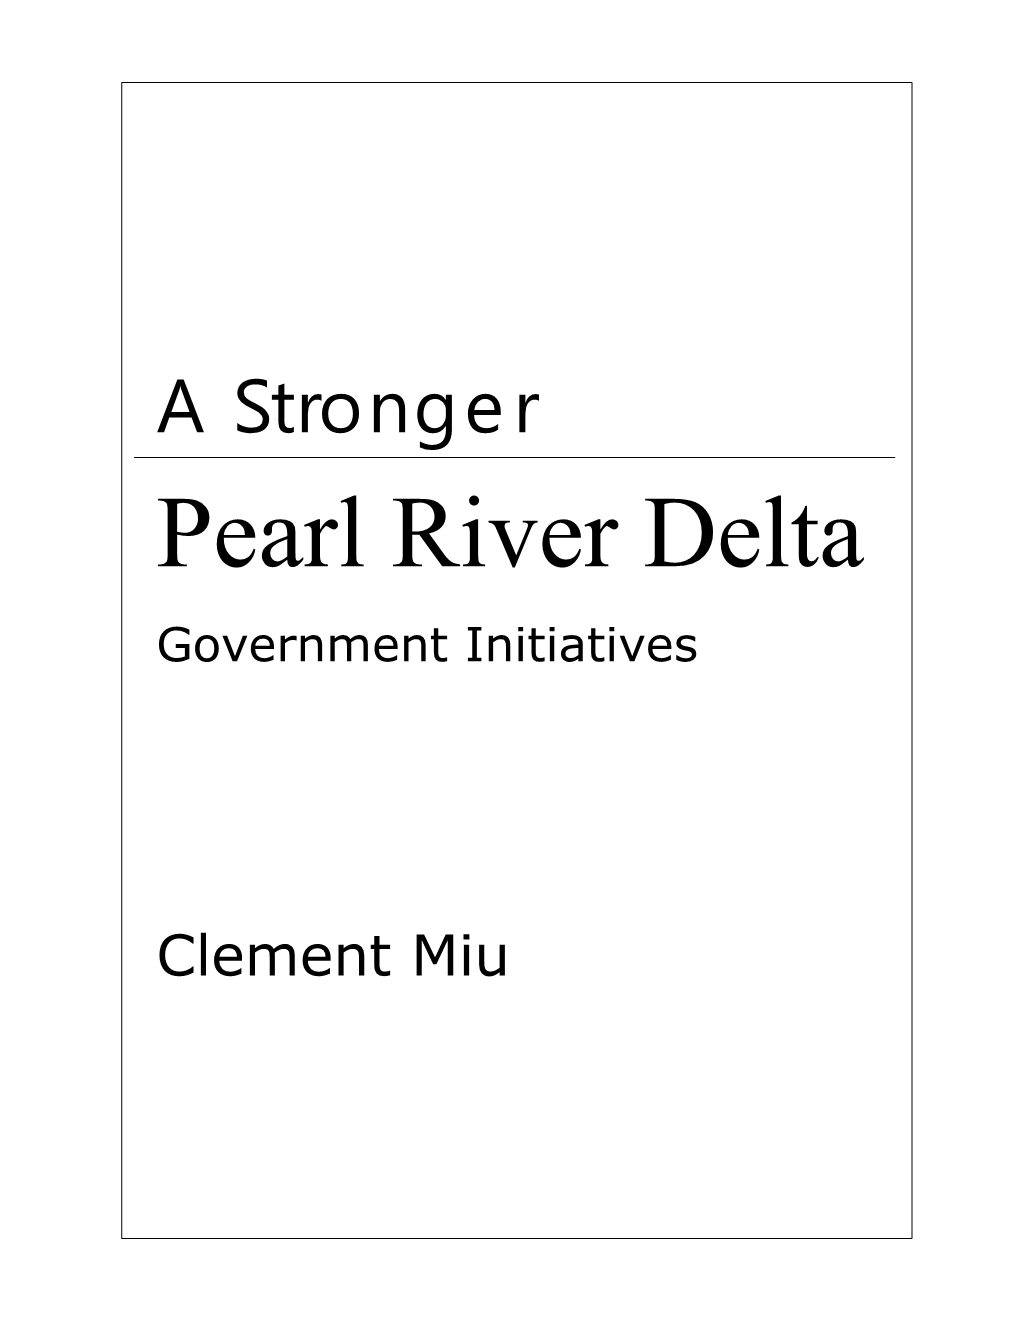 Pearl River Delta Government Initiatives